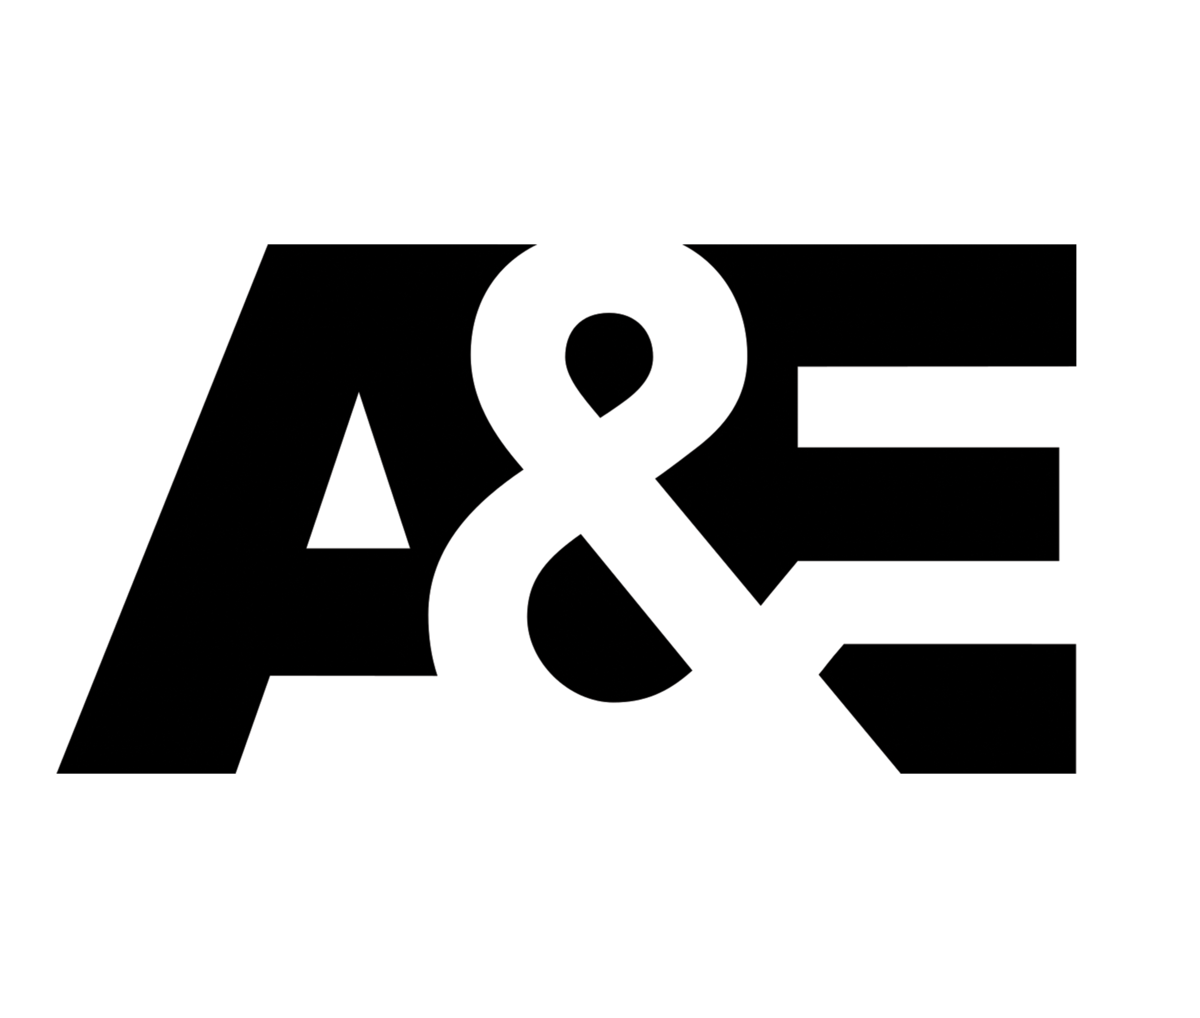 A&E Logo 2